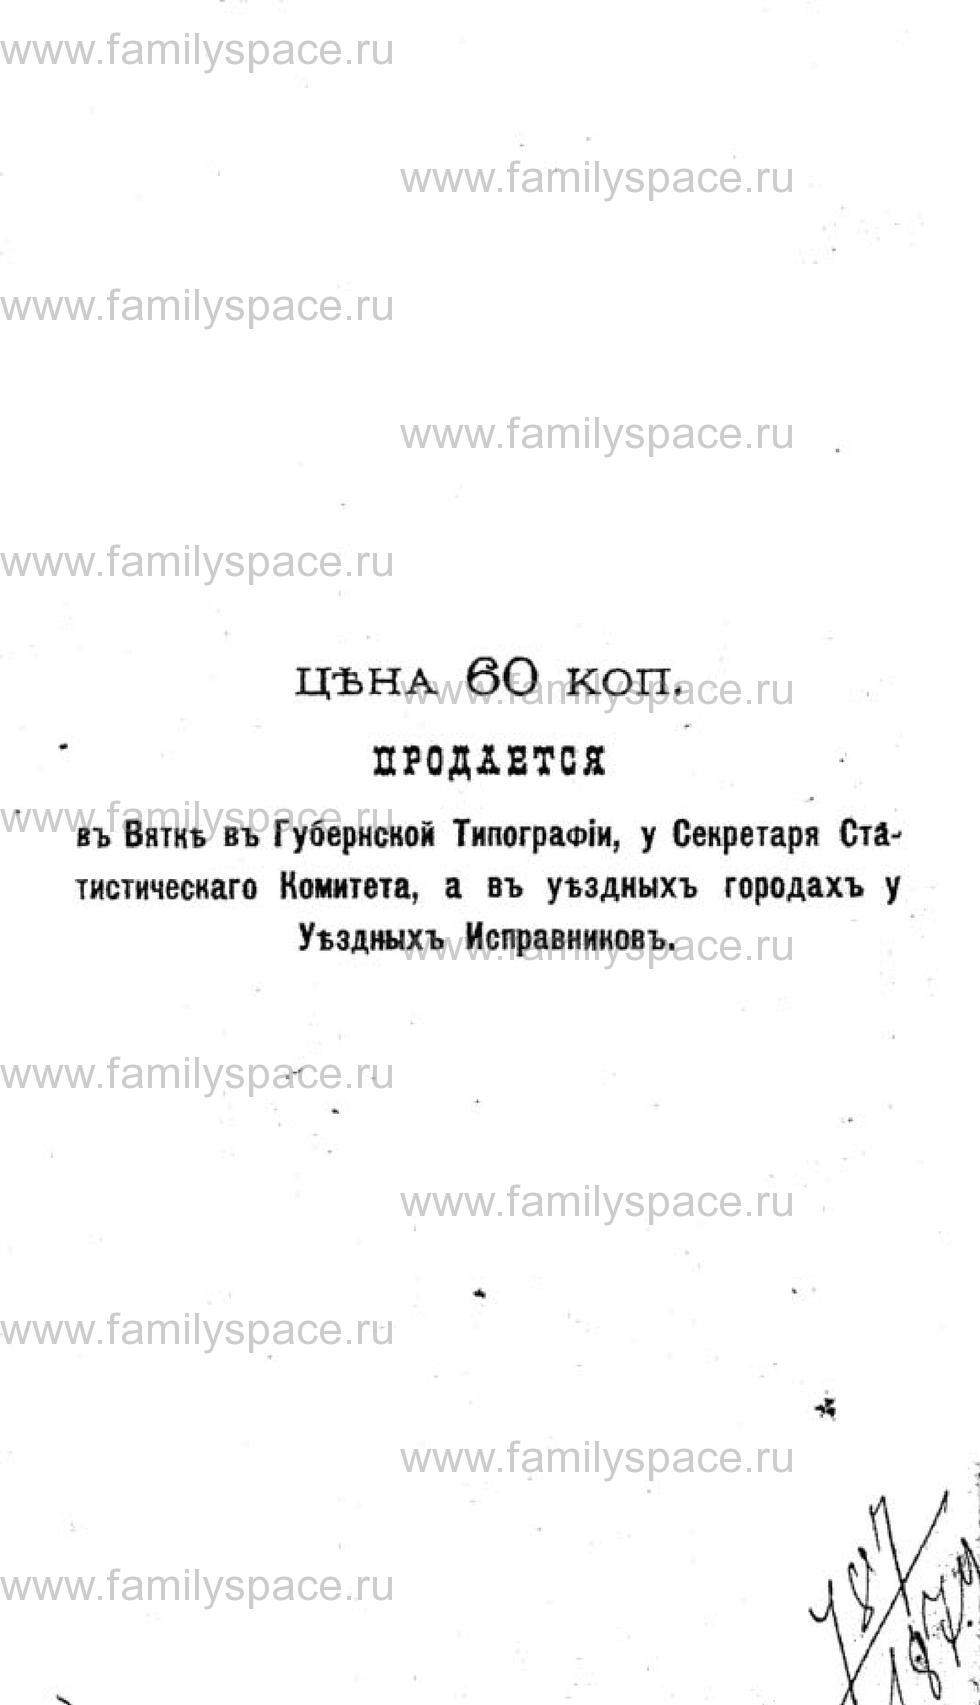 Поиск по фамилии - Календарь Вятской губернии - 1880, страница 3081